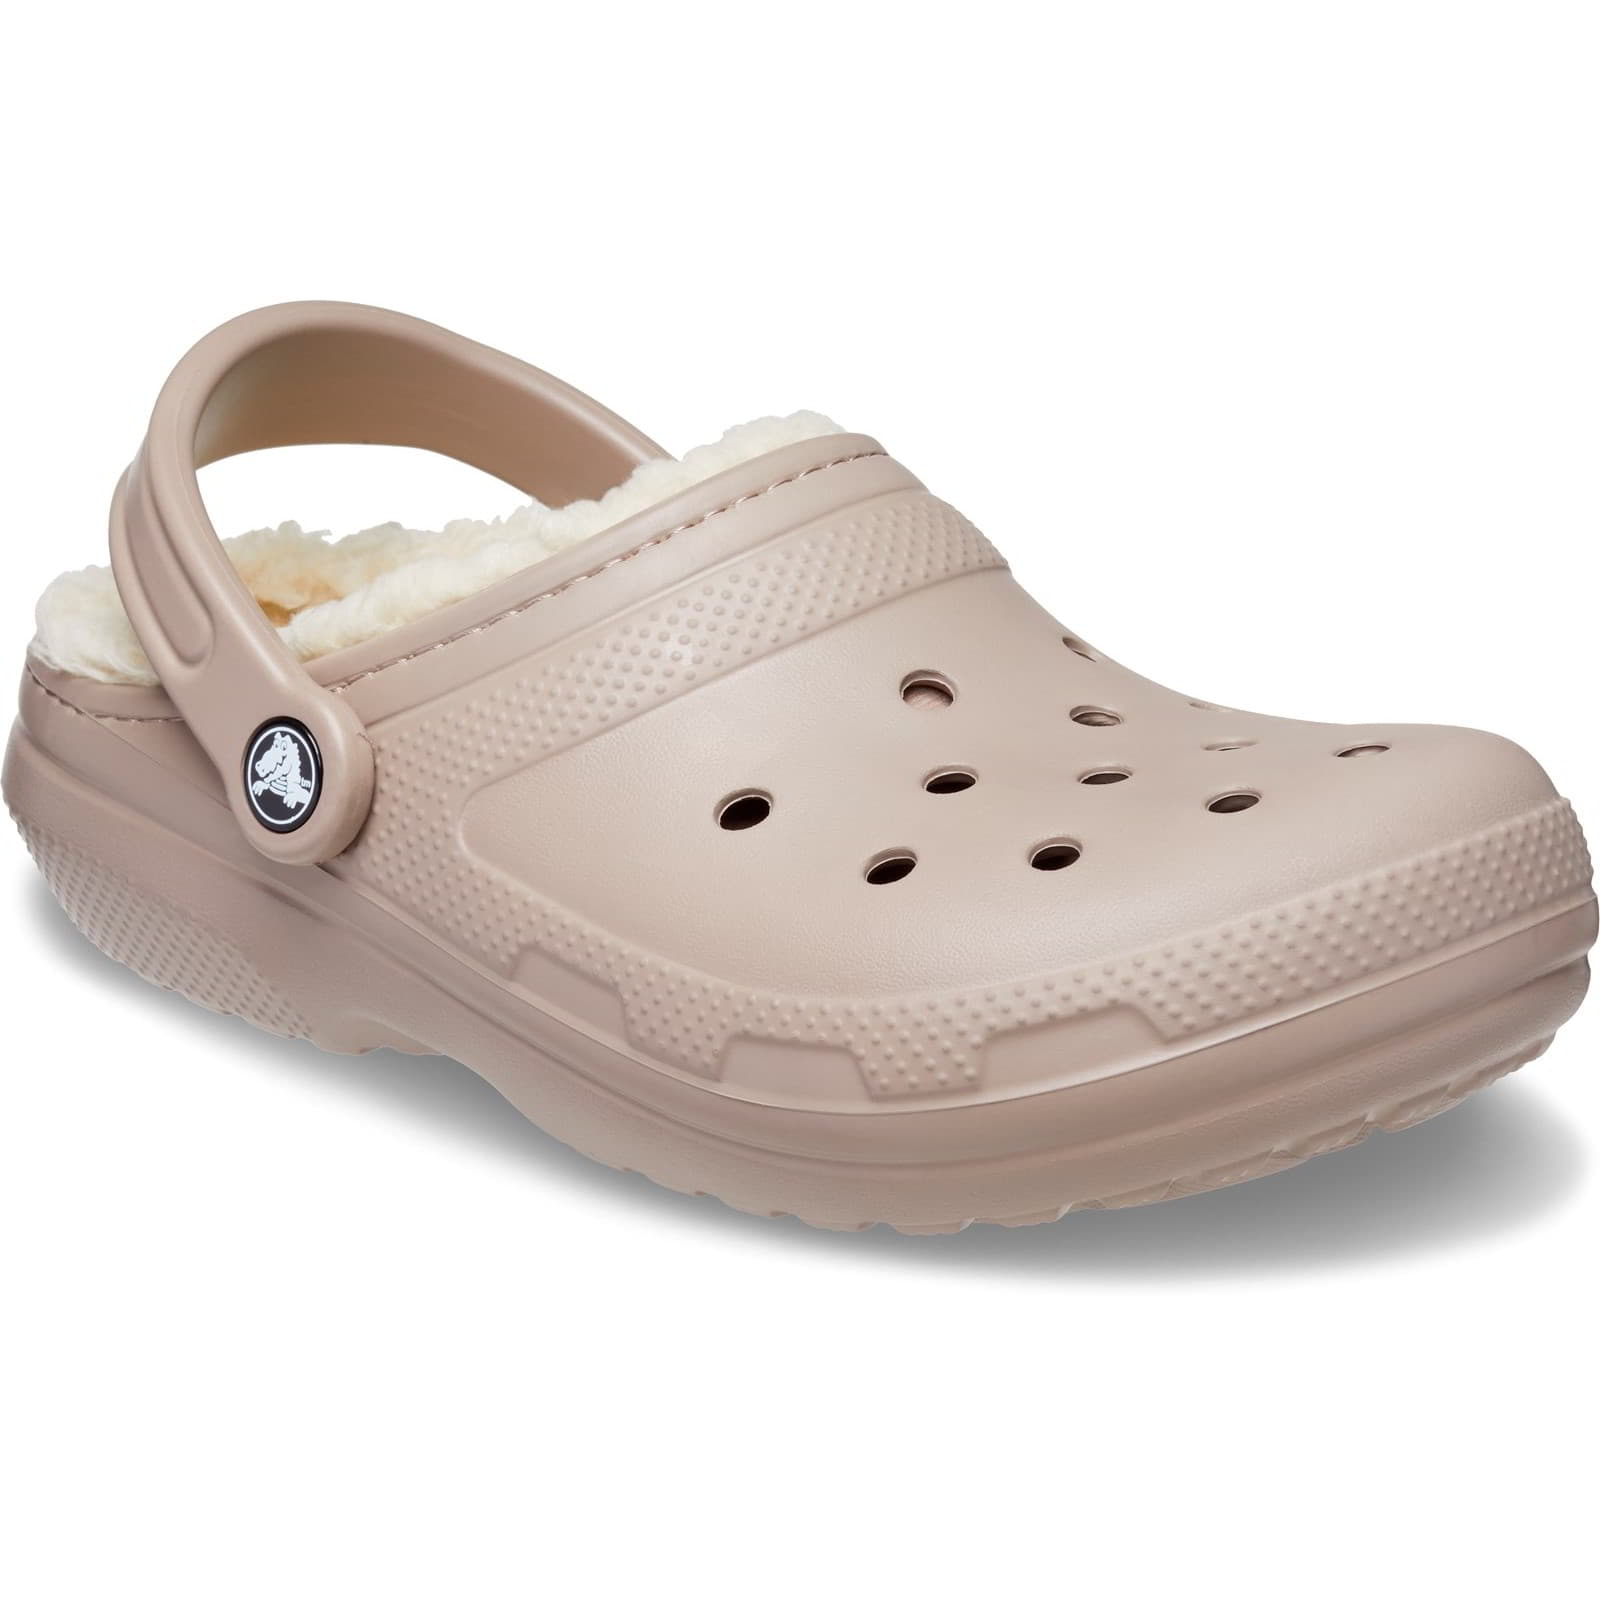 Crocs Men's Women's Classic Lined Clog Warm Slip On Slippers Shoes - UK M11-W12 / EU 46-47 / US M12-W14